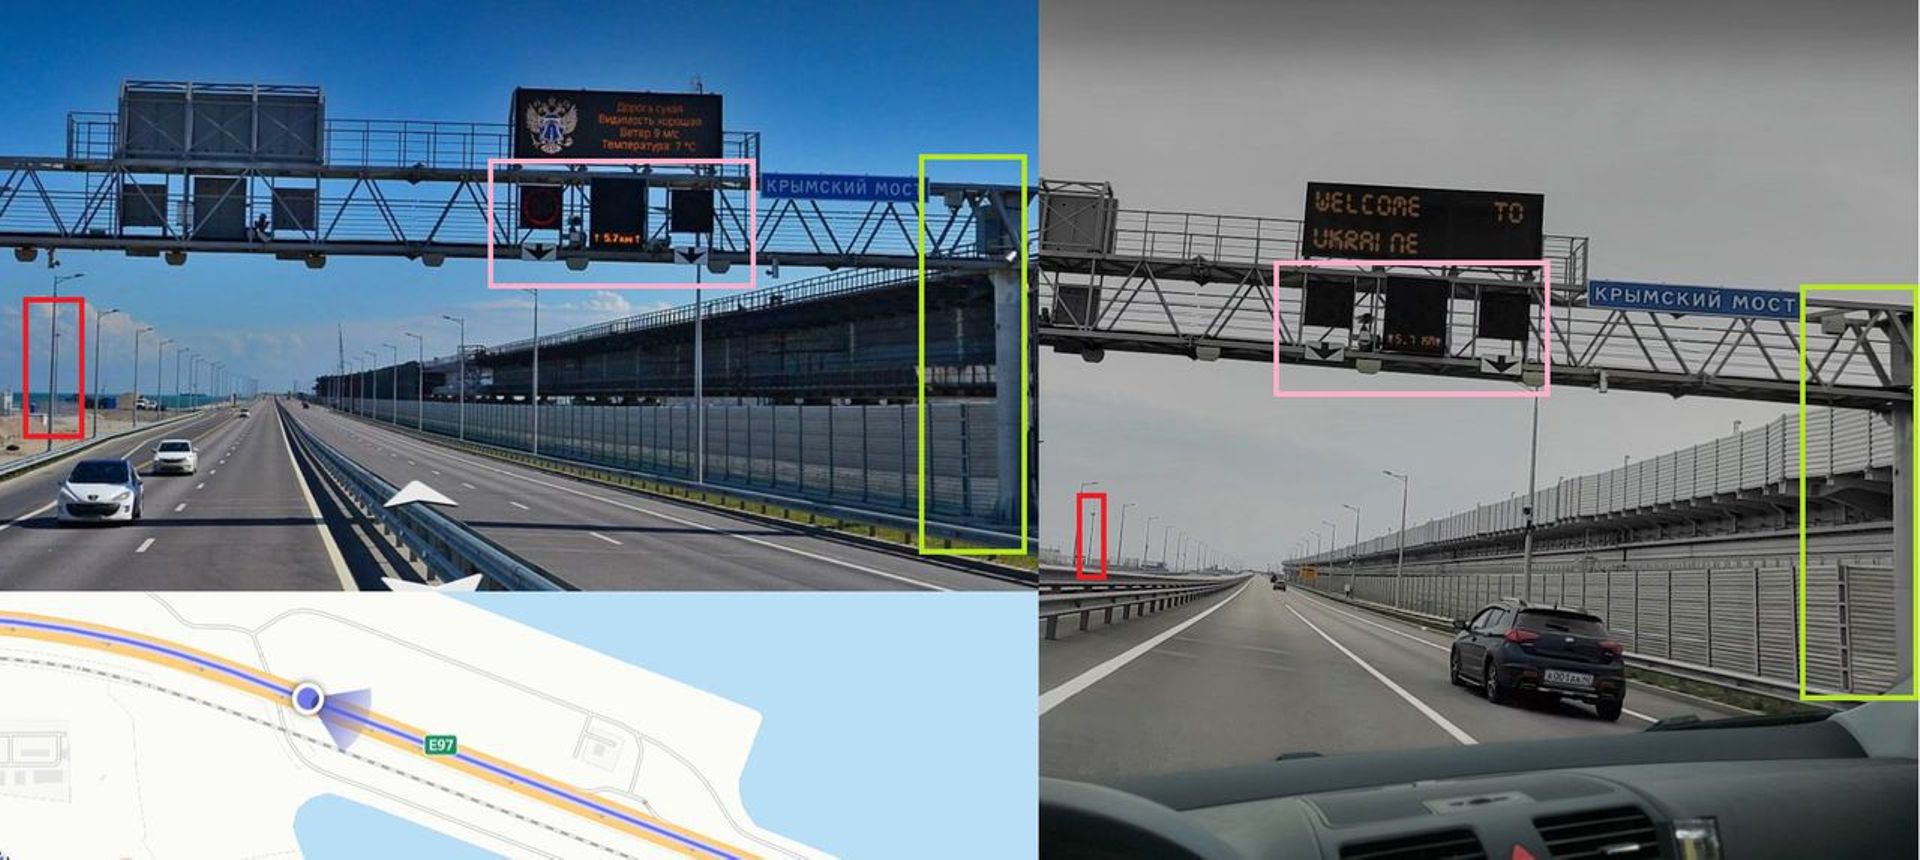 Les détails de la photo virale (à droite) correspondent à une vue de la rue de 2019 sur Yandex Maps (à gauche).